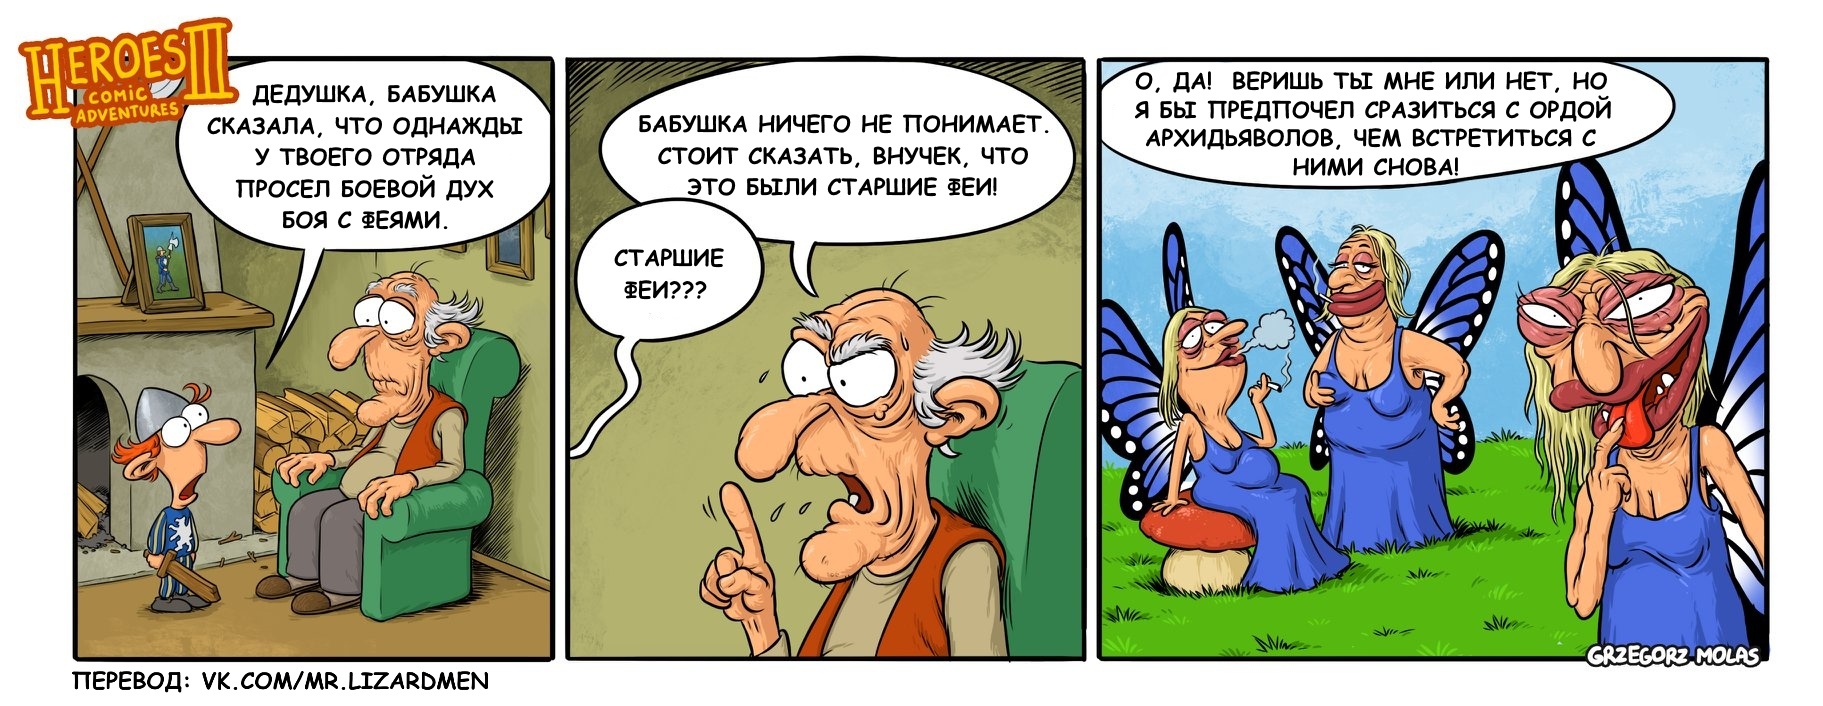 Elder Fairies - HOMM III, Grzegorz Molas, Heroic humor, Comics